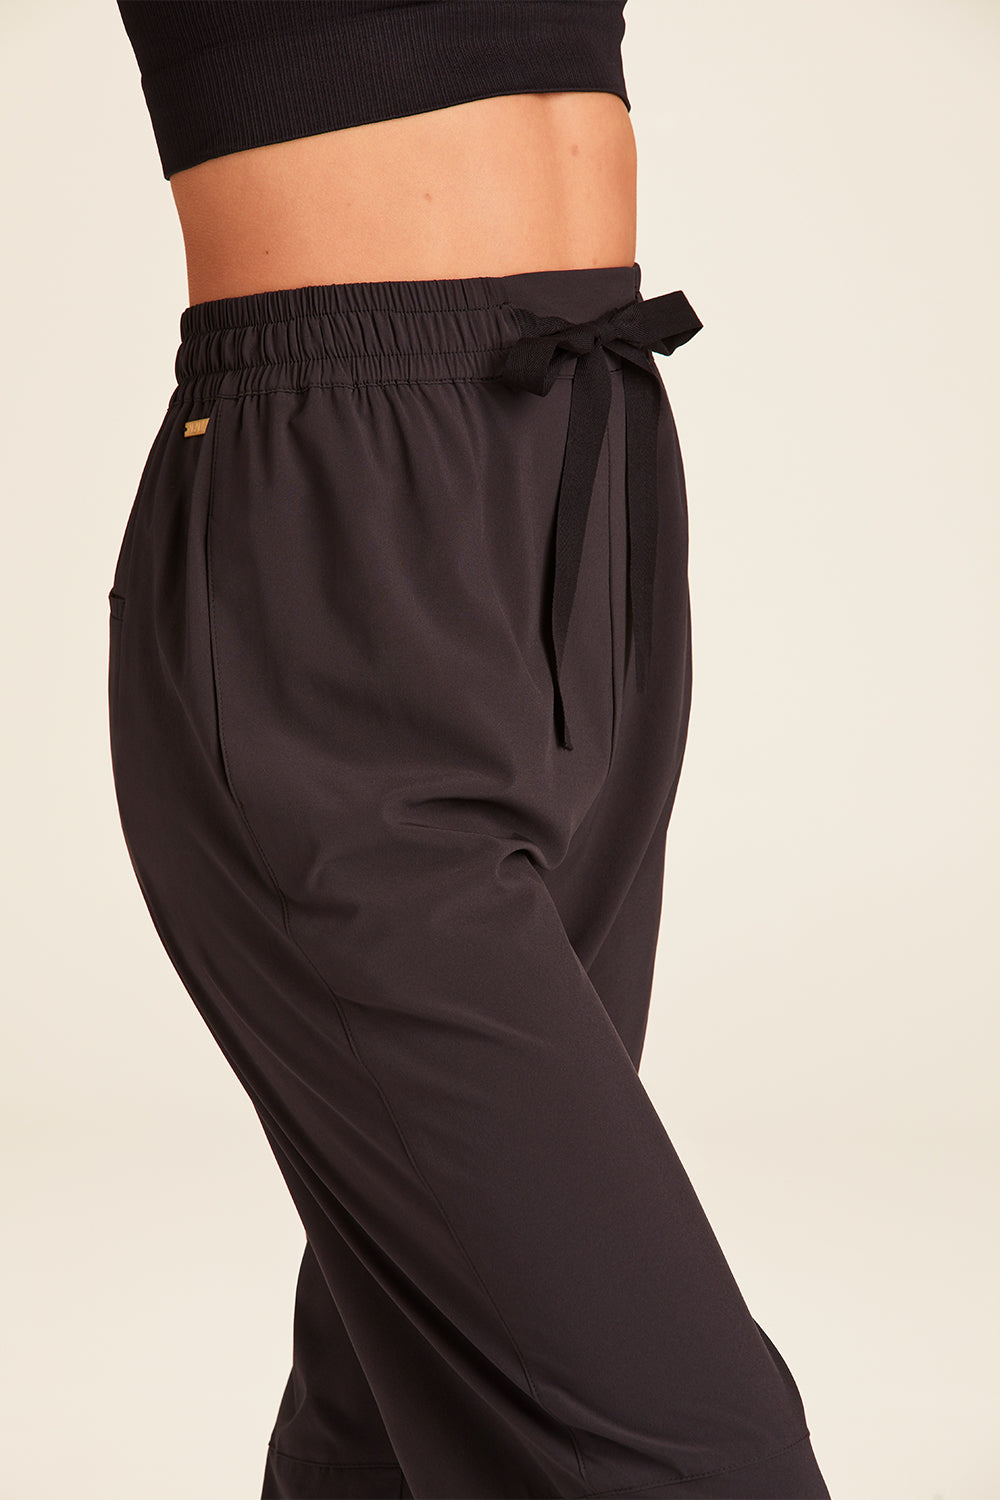 Commuter Temperament Commute Solid Color Hollow Large Size Women Clothes Casual  Pants – Black – XX Large